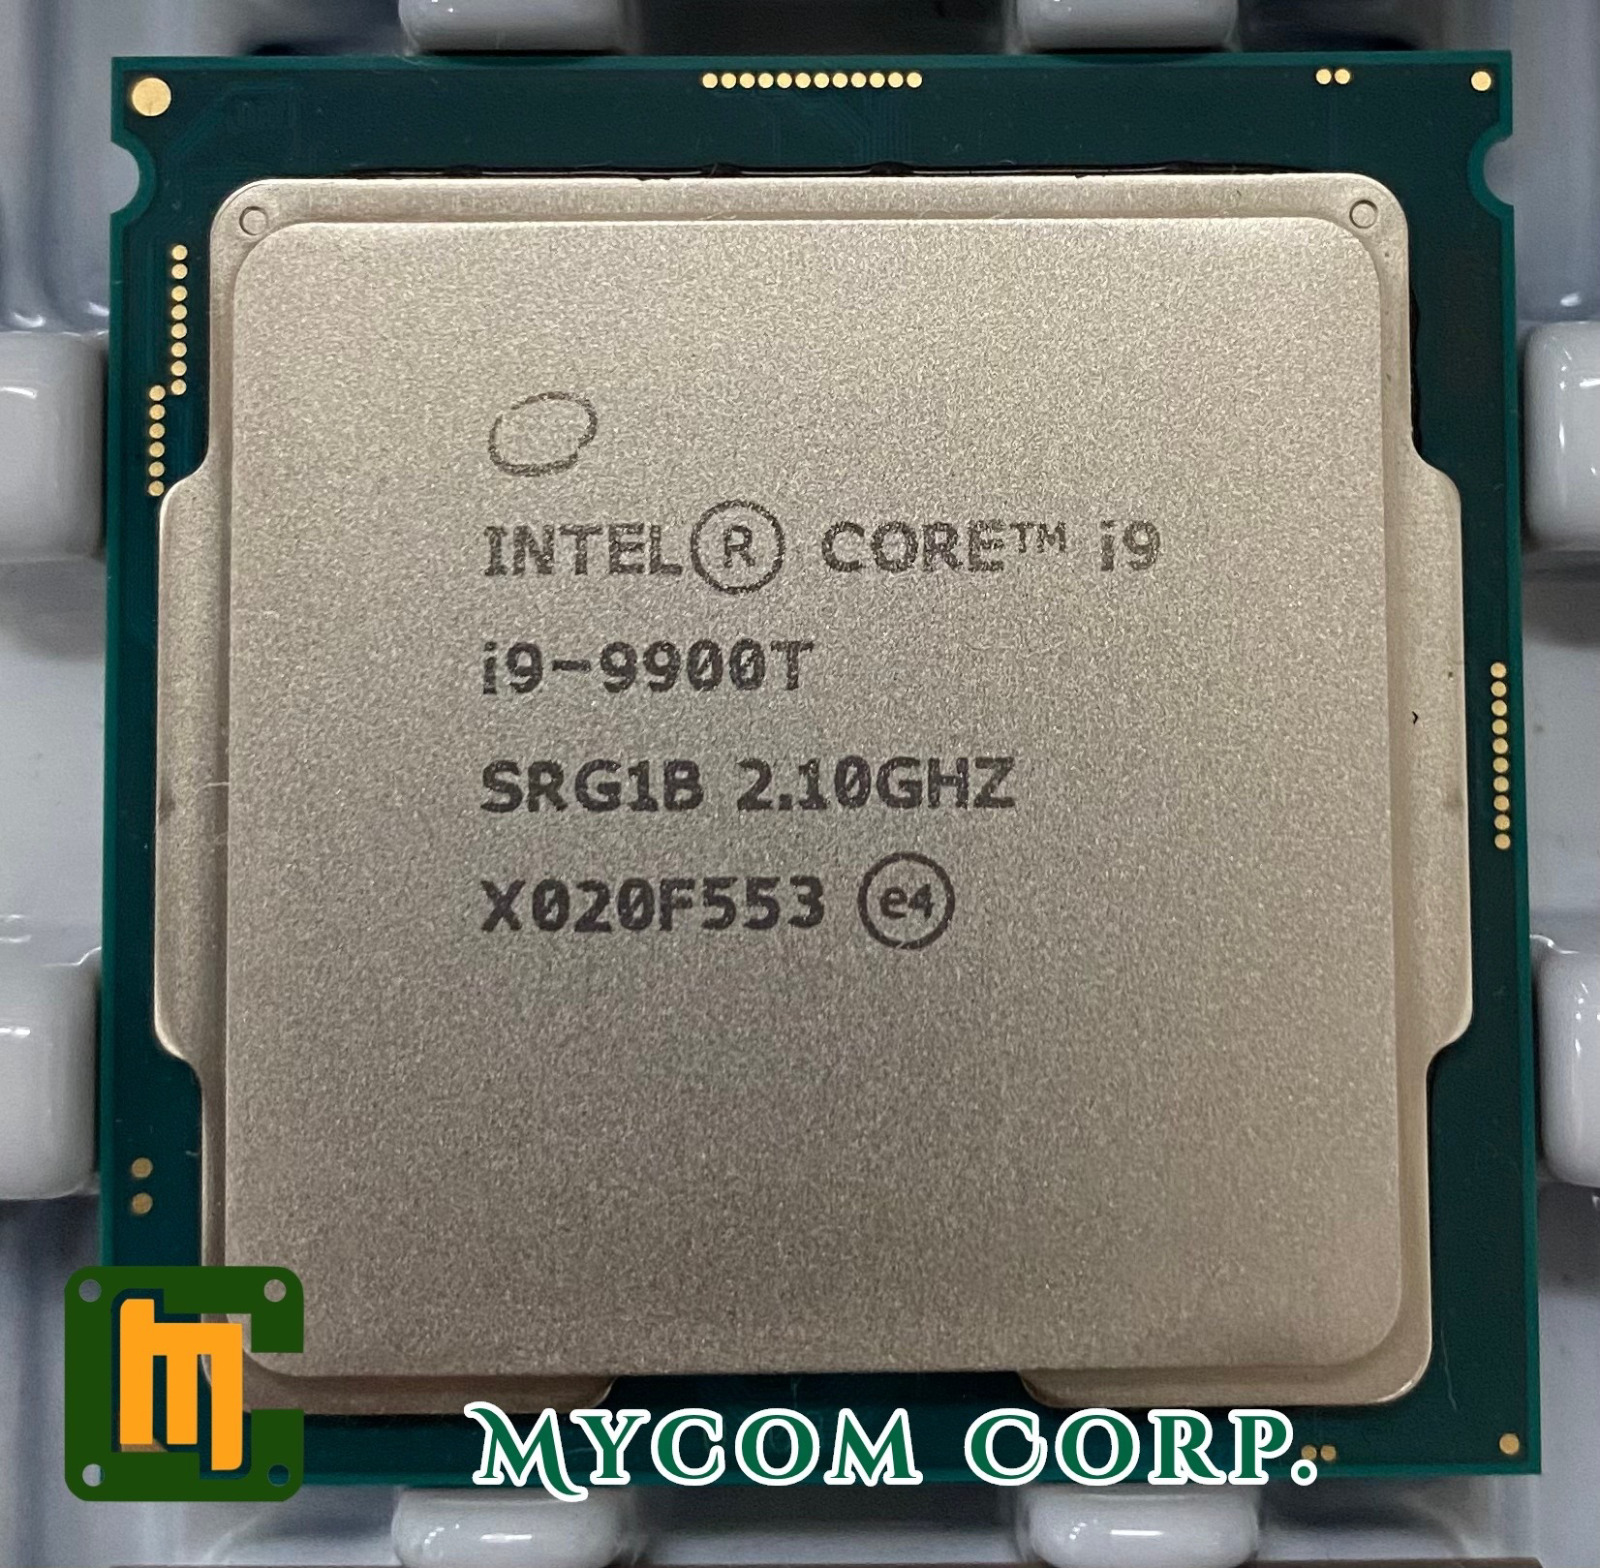 Intel Core i9-9900T SRG1B 2.1GHz 8Core 16Thread 16MB 35W LGA1151 CPU Processor